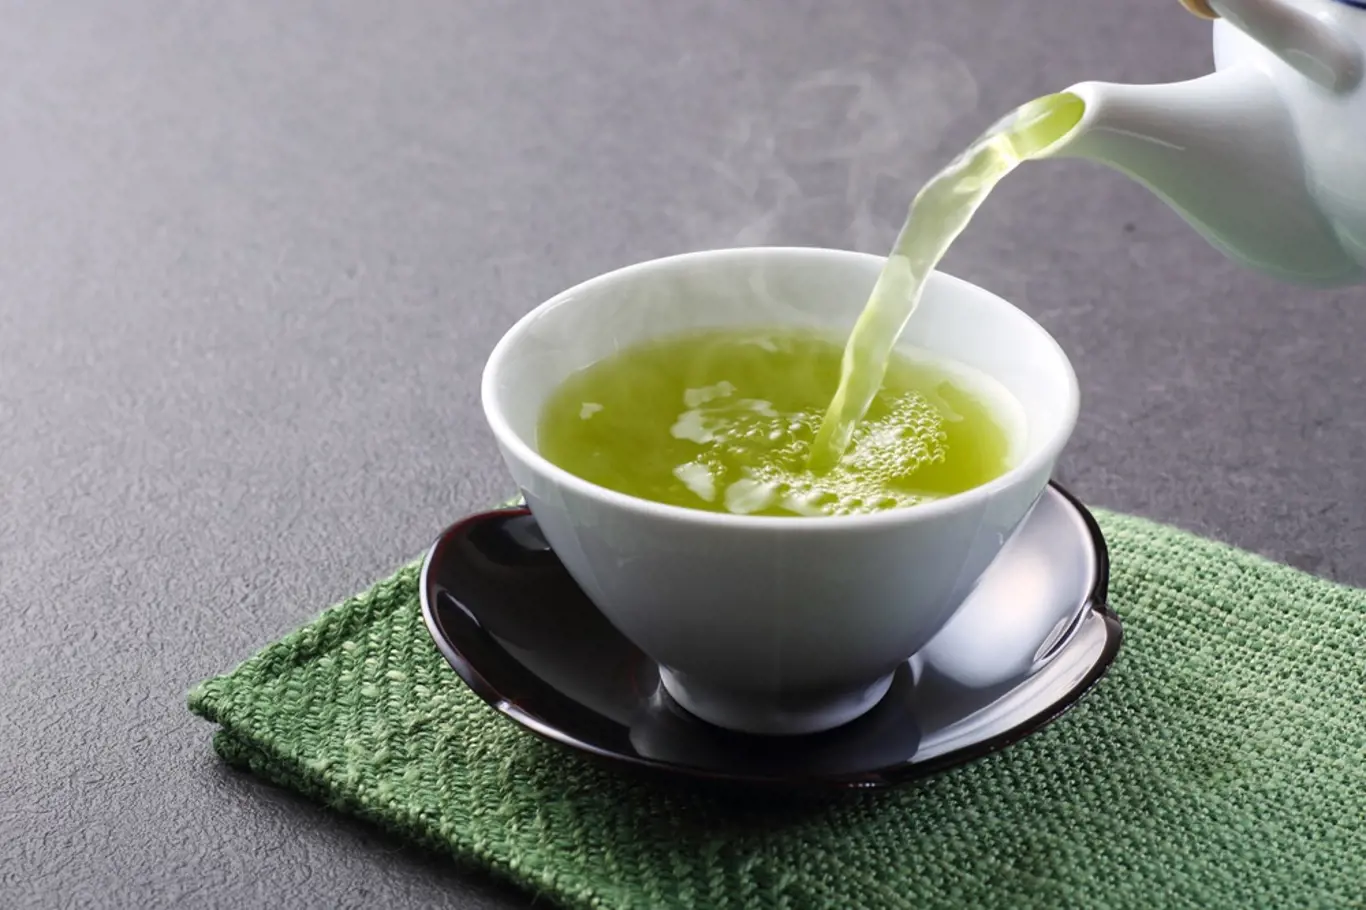 Spalování tuků urychlí zelený čaj. Navíc jde o cenný antioxidant.